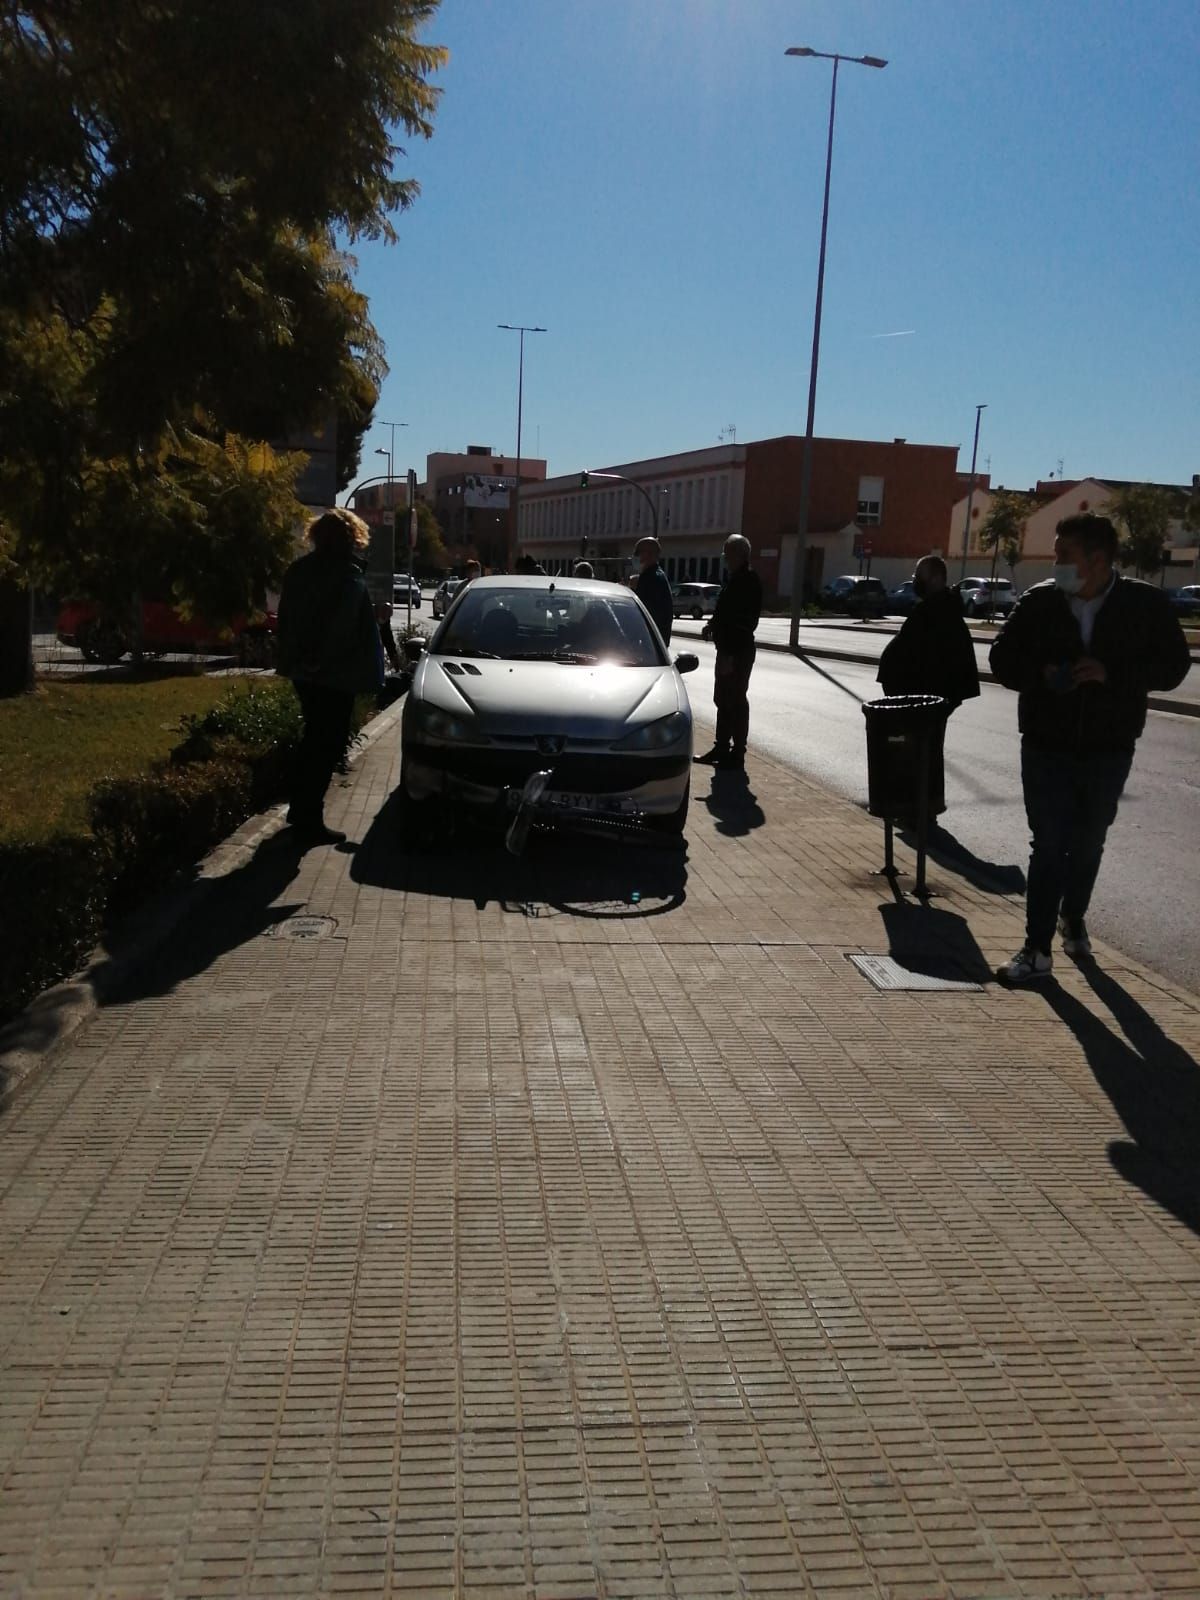 El atropello ha tenido lugar justo enfrente del Hospital General de Castellón